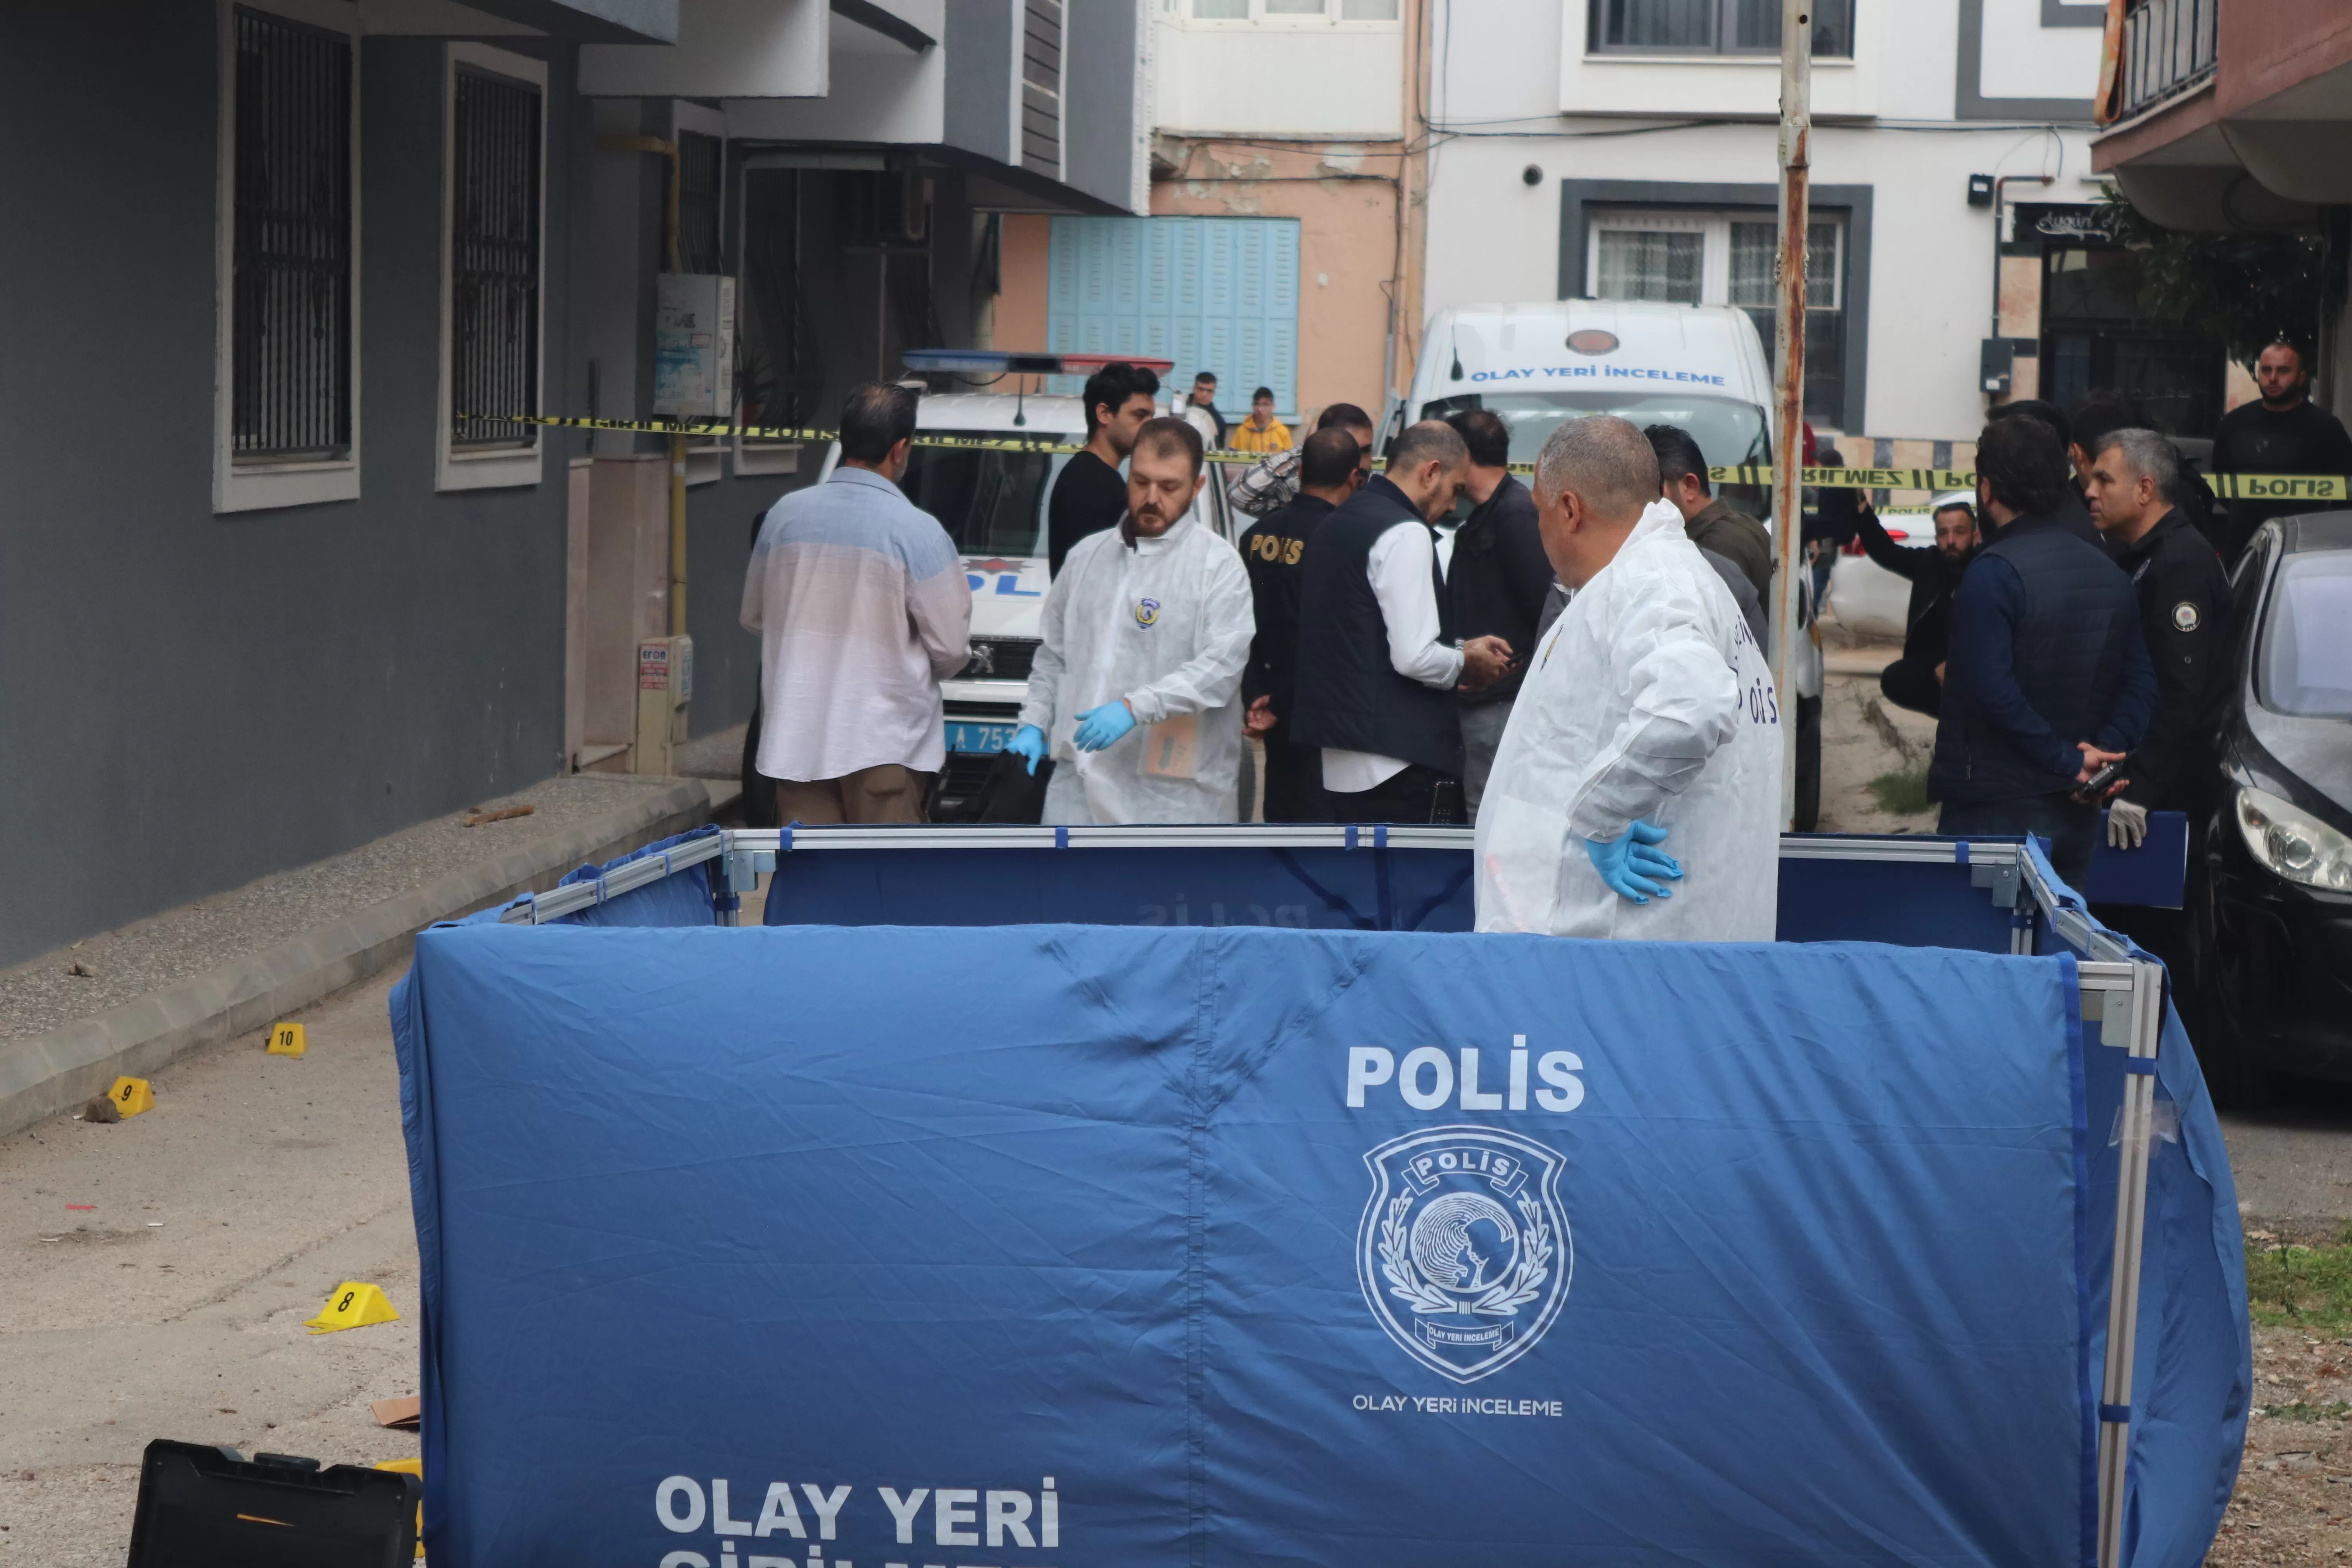 İzmir'in Buca ilçesinde dün meydana gelen silahlı saldırı olayında, bir araca düzenlenen saldırı sonucunda 1 kişi hayatını kaybetti, 2 kişi ise yaralandı.